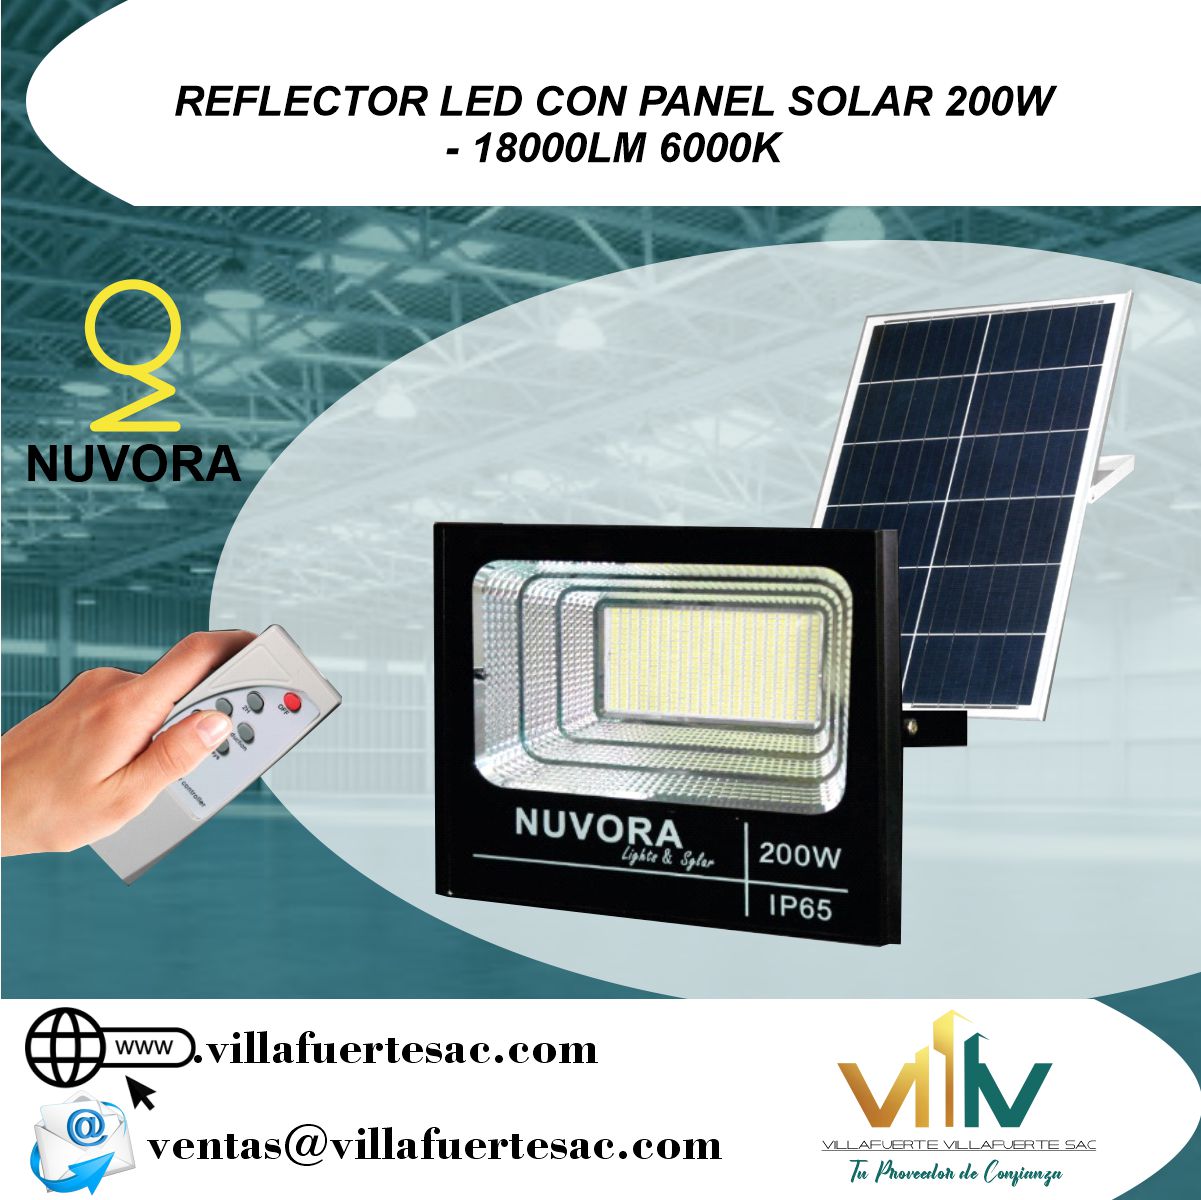 REFLECTOR LED CON PANEL SOLAR 200W - 18000LM 6000K - Villafuerte  Villafuerte S.A.C